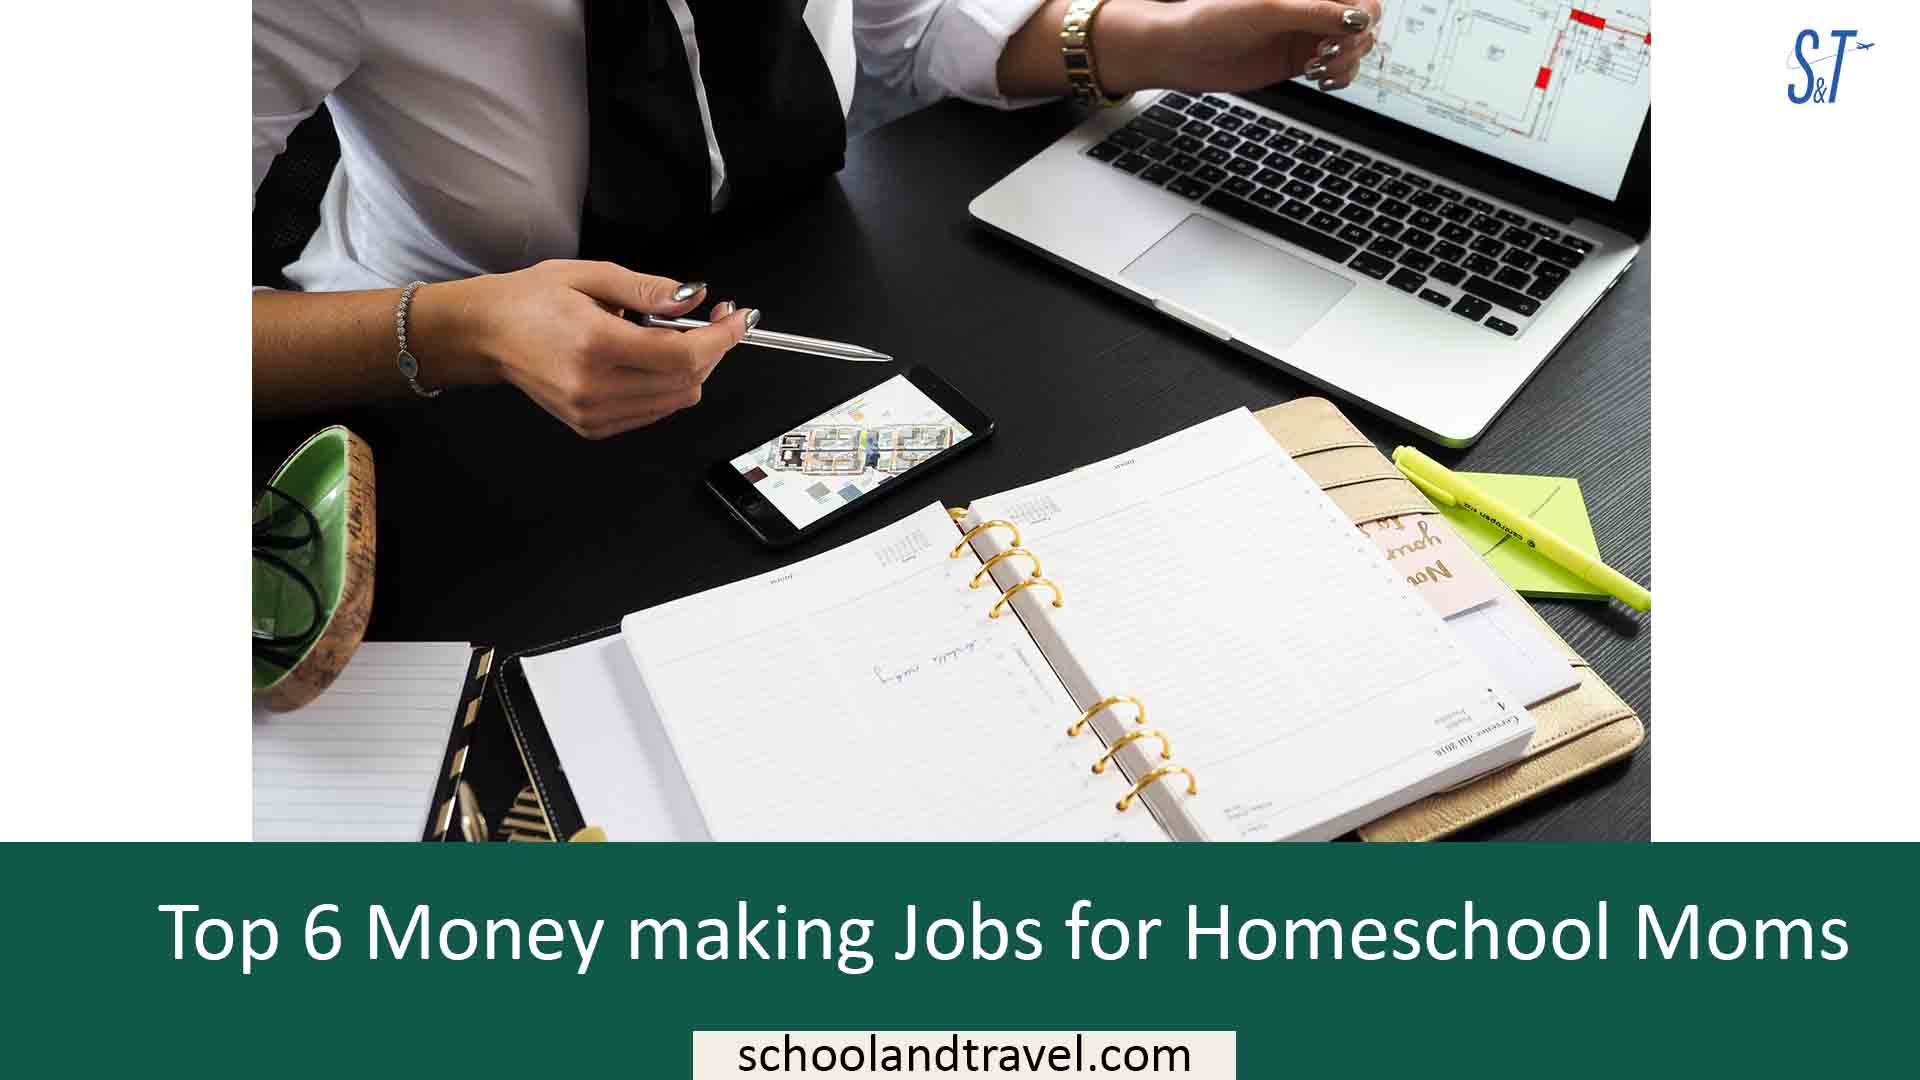 Top 6 Money making Jobs for Homeschool Moms